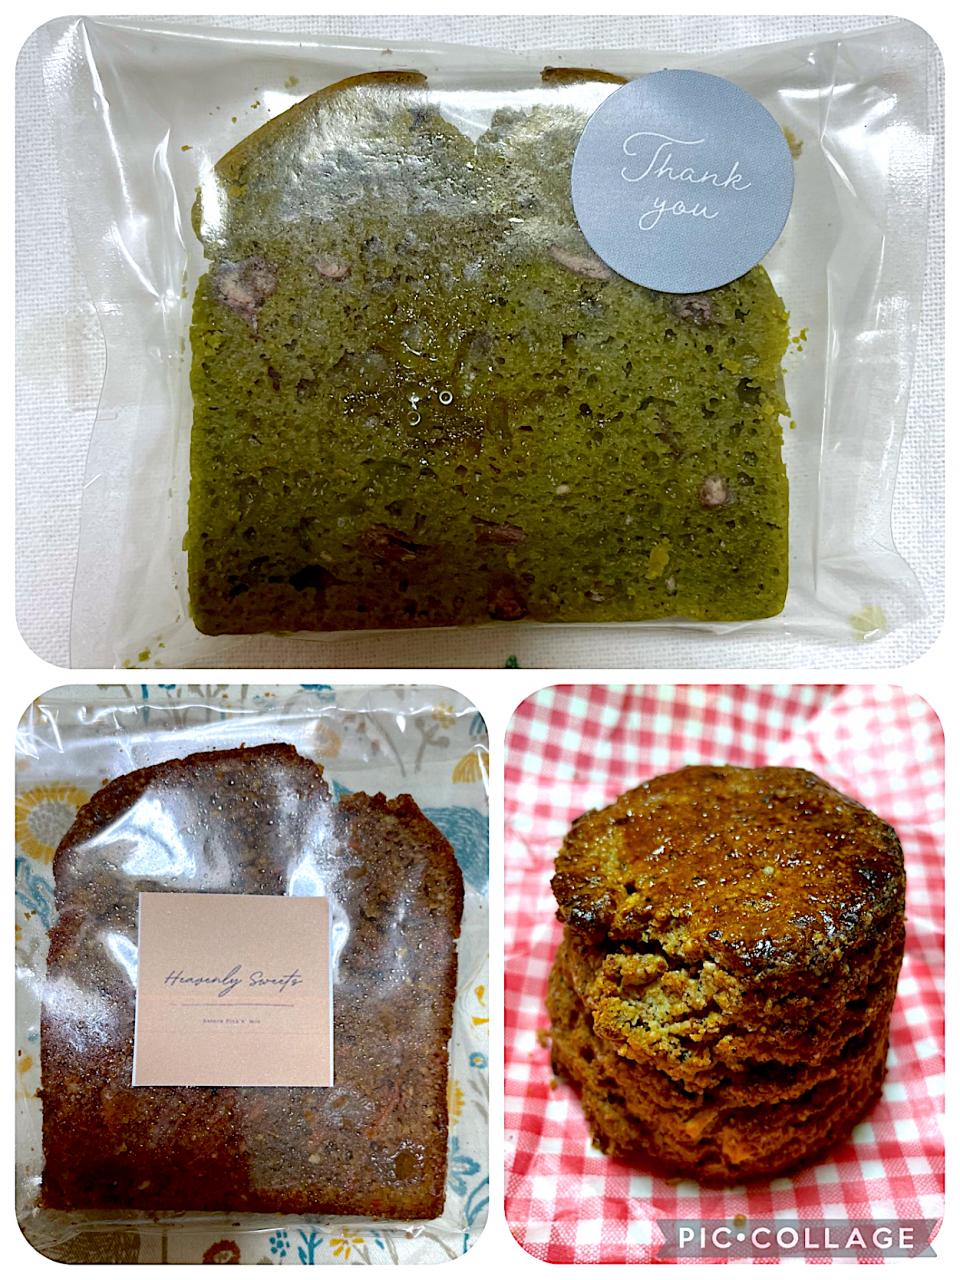 有機抹茶の玄米パウンドケーキ@キュリードドゥ、キャロットケーキ、全粒粉スコーン@ナチュラピック&ミックス